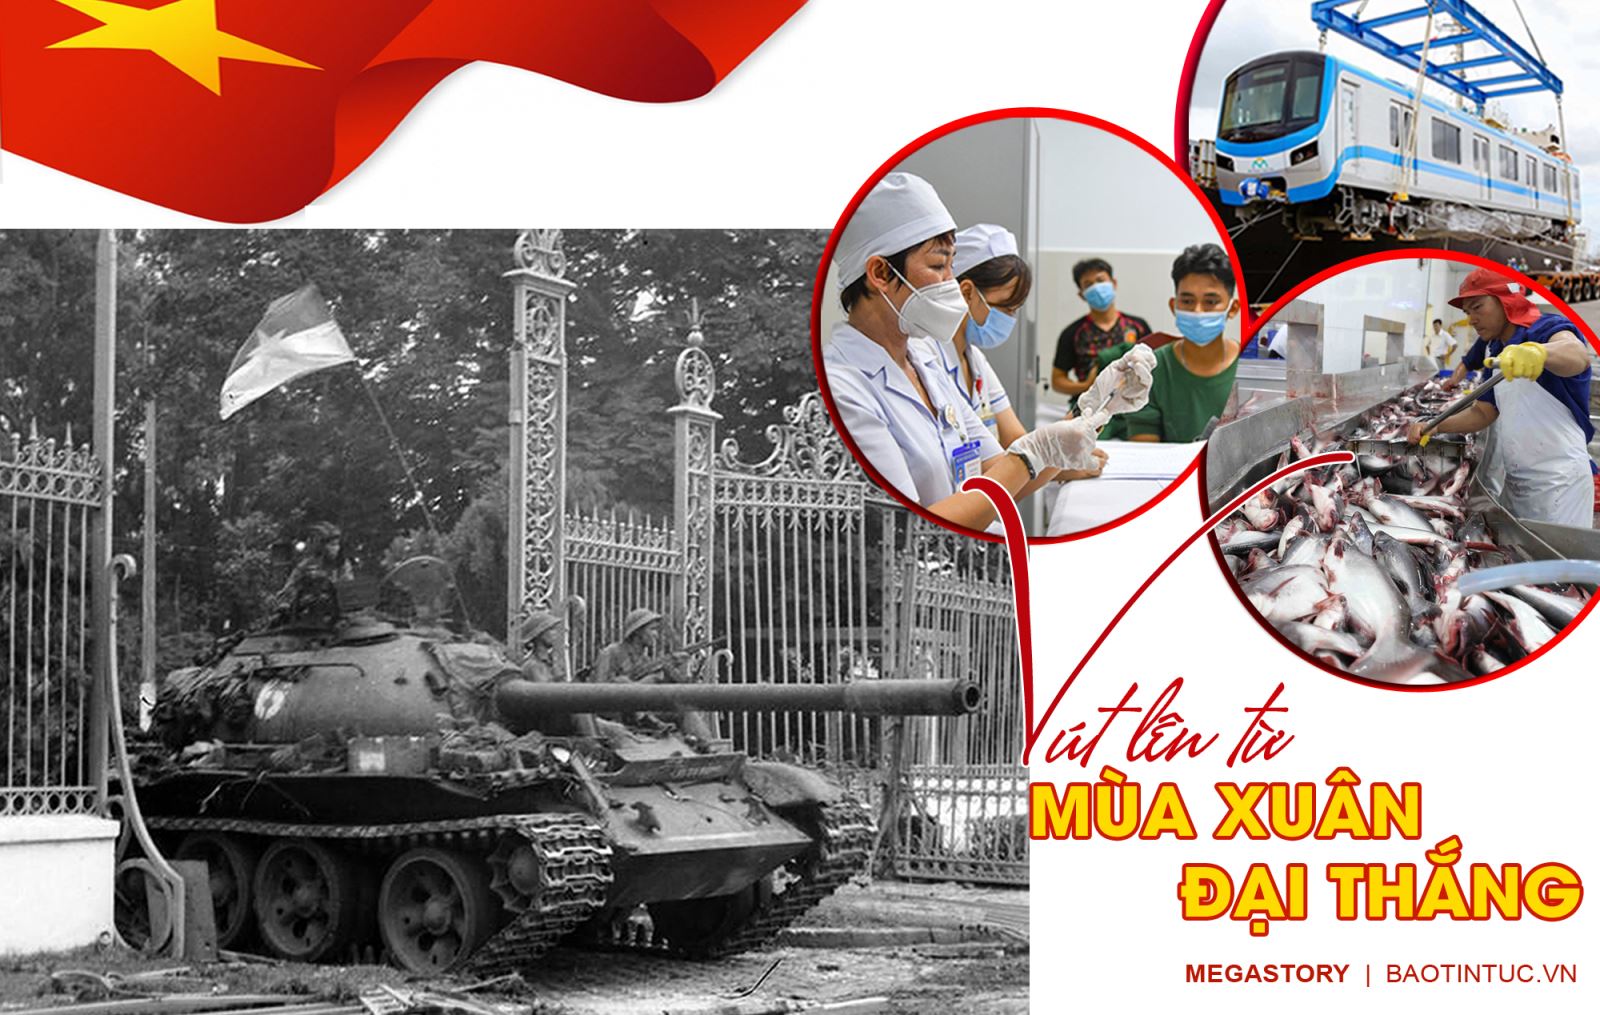 Xuân đại thắng: Năm 2024 Việt Nam chào đón kỷ niệm 70 năm chiến thắng Điện Biên Phủ. Đó là một chiến thắng to lớn của toàn dân tộc, tạo nên sự tự hào, khích lệ tinh thần đối với thế hệ người Việt hiện tại. Hãy xem hình ảnh để có được cái nhìn thú vị về một thời kỳ lịch sử táo bạo và đầy nhân văn của dân tộc Việt.